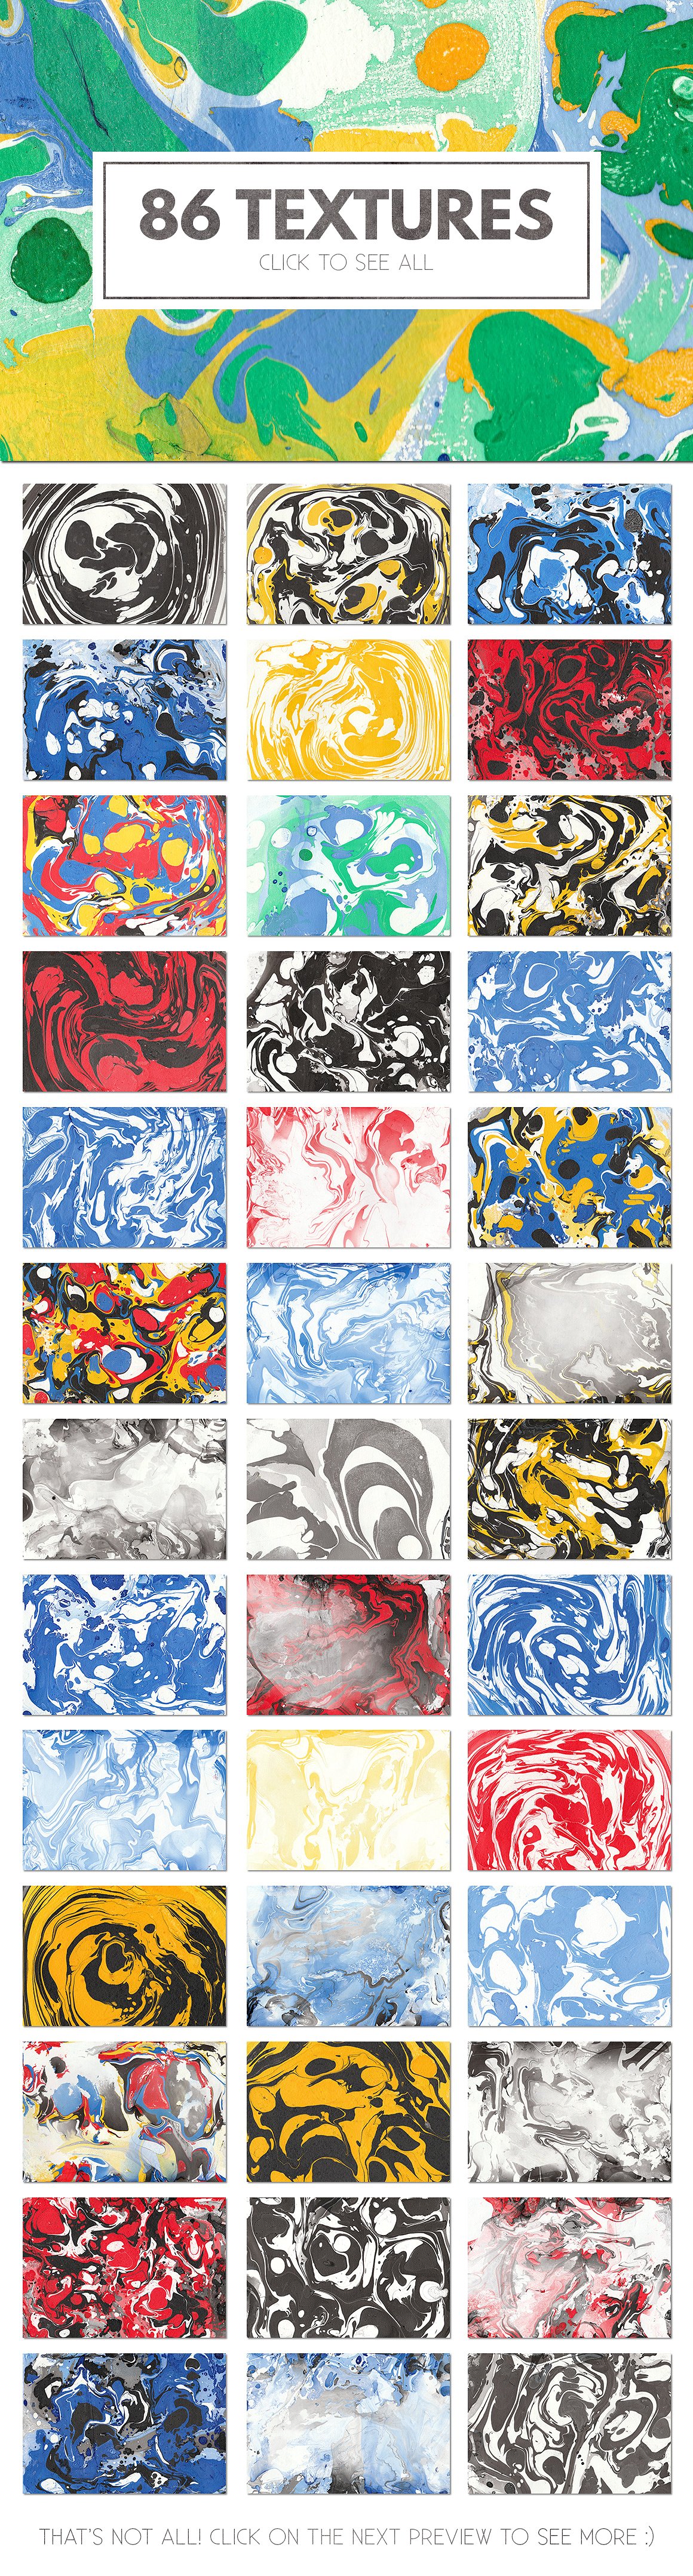 多彩的大理石纹理背景素材 86 Colorful Marbl